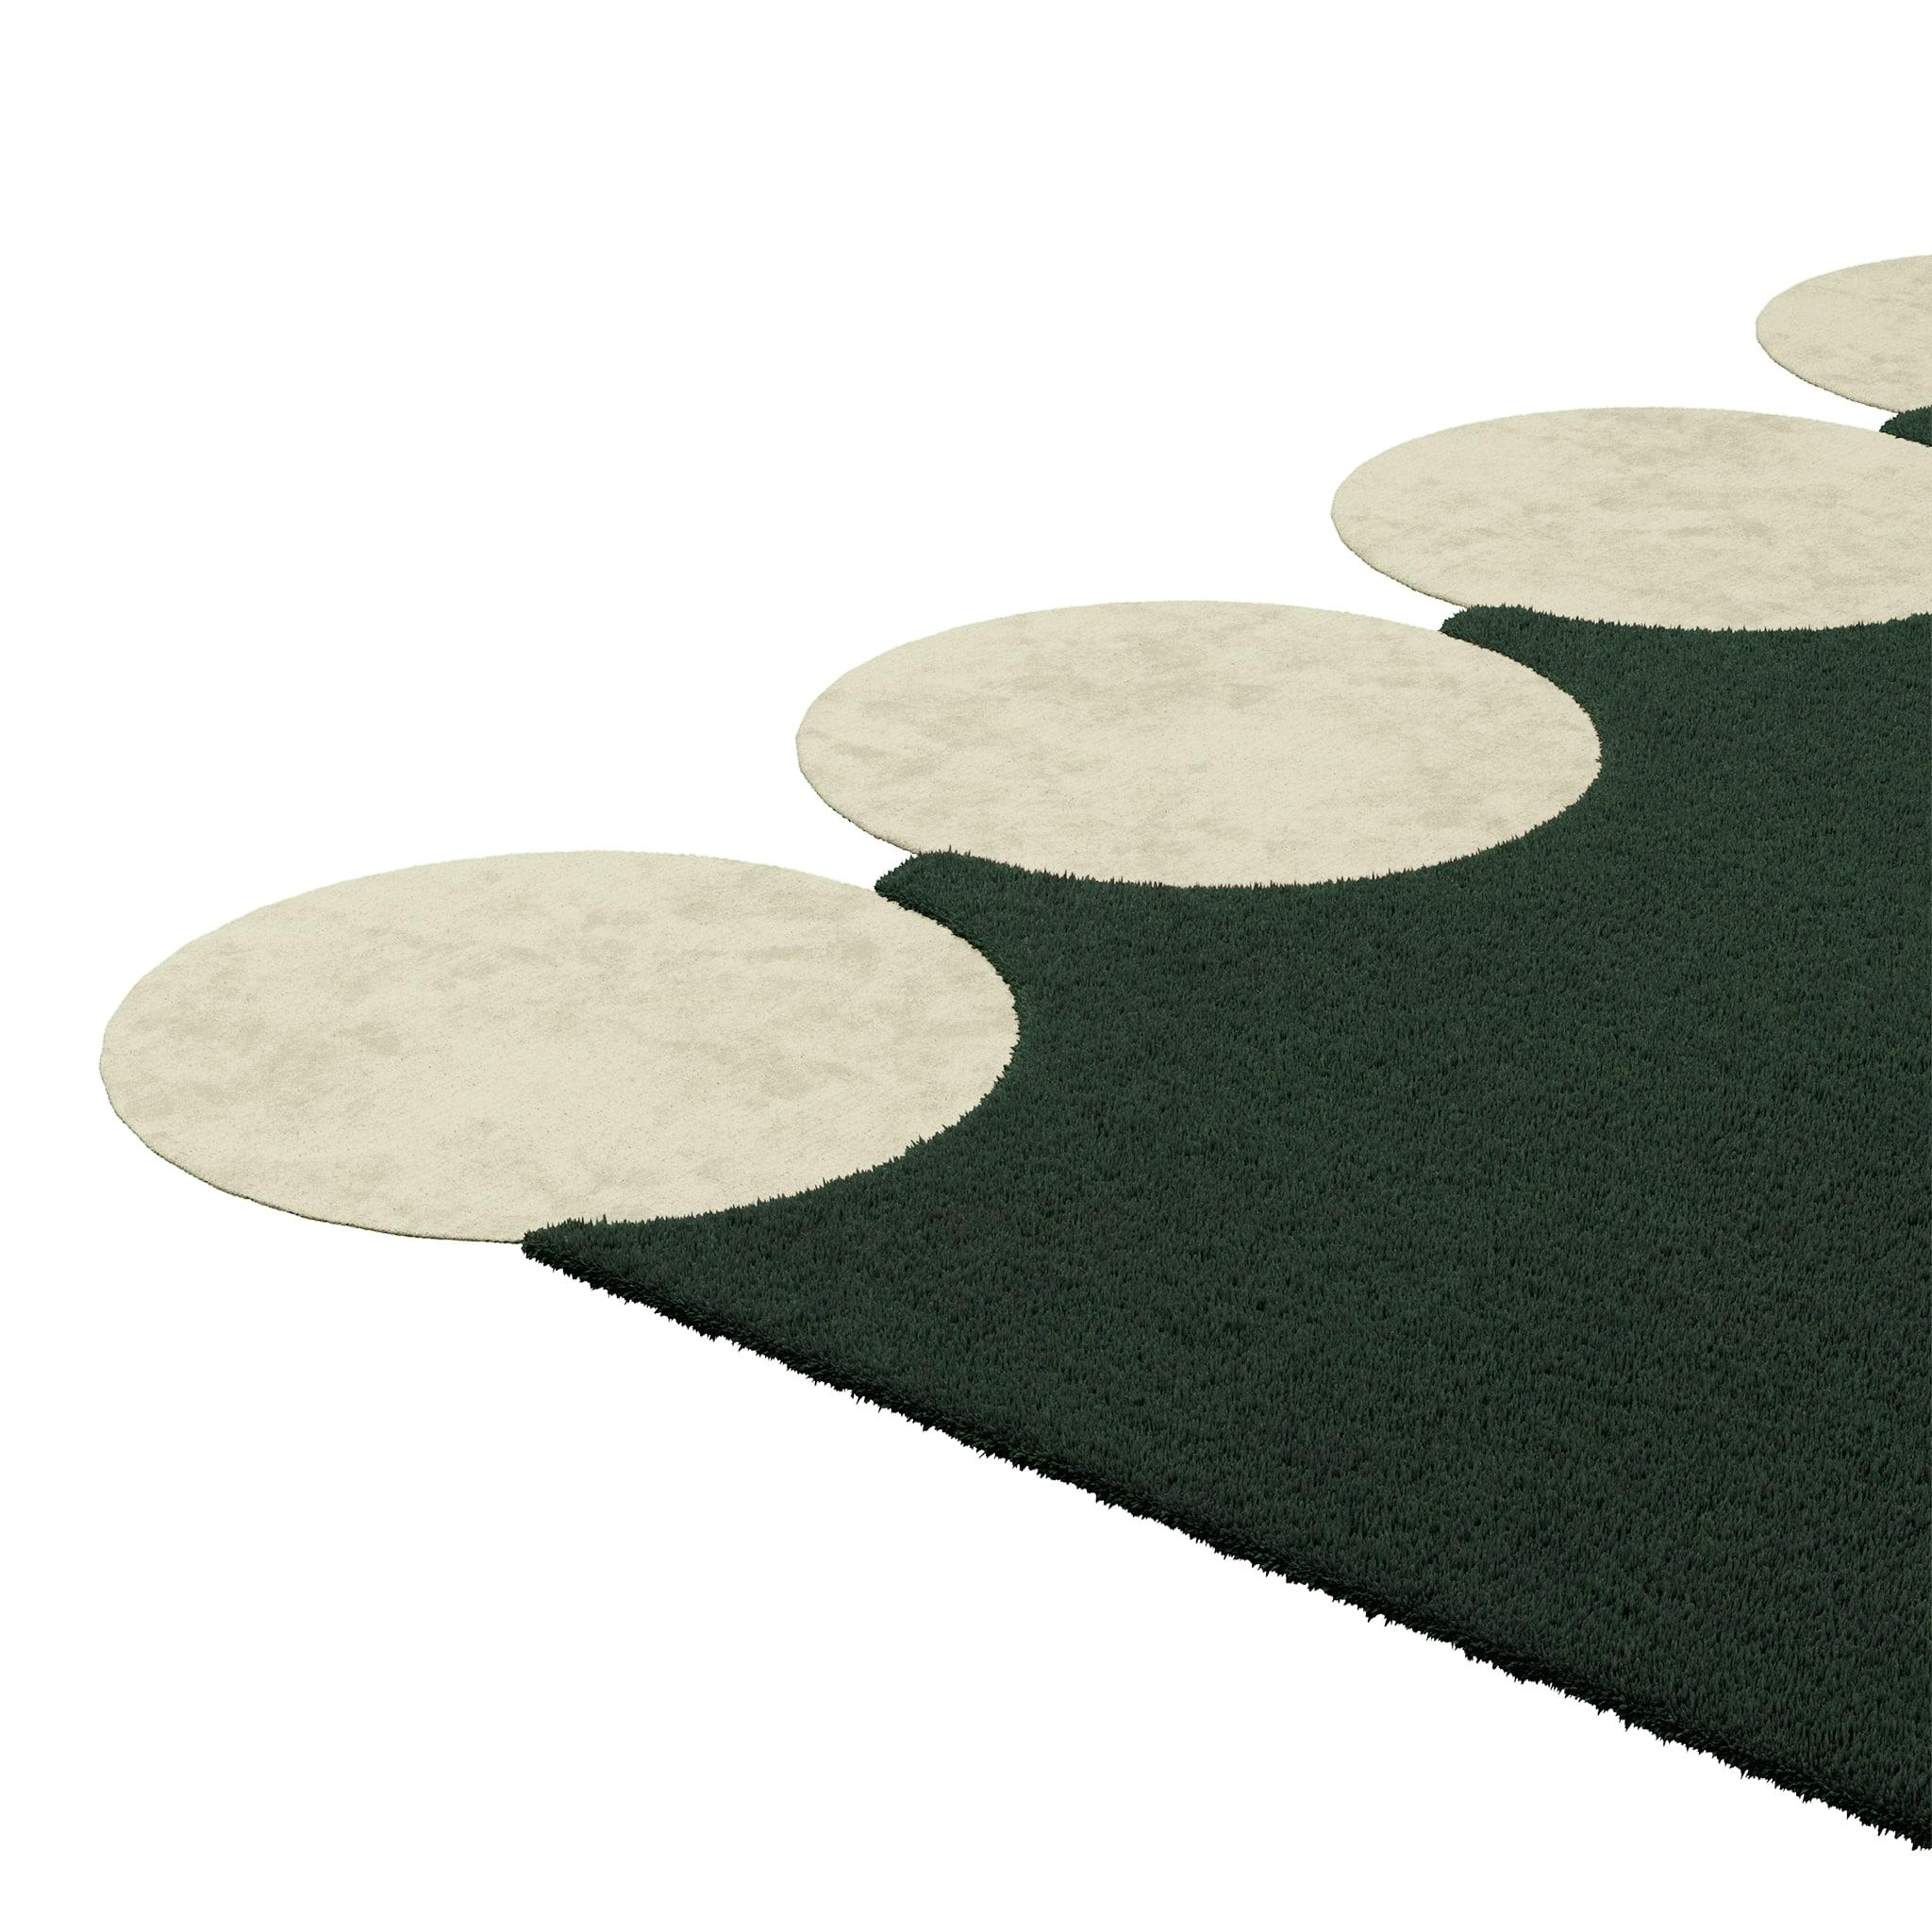 Tapis Shaped #047 ist ein Teppich im Memphis-Design-Stil in trübem Grün und Off-White, einer klassischen und doch raffinierten Farbkombination.
Mit seiner rechteckigen Form und den drei kleinen Kreisen an jeder Kante ist dieser Memphis Design-Stil